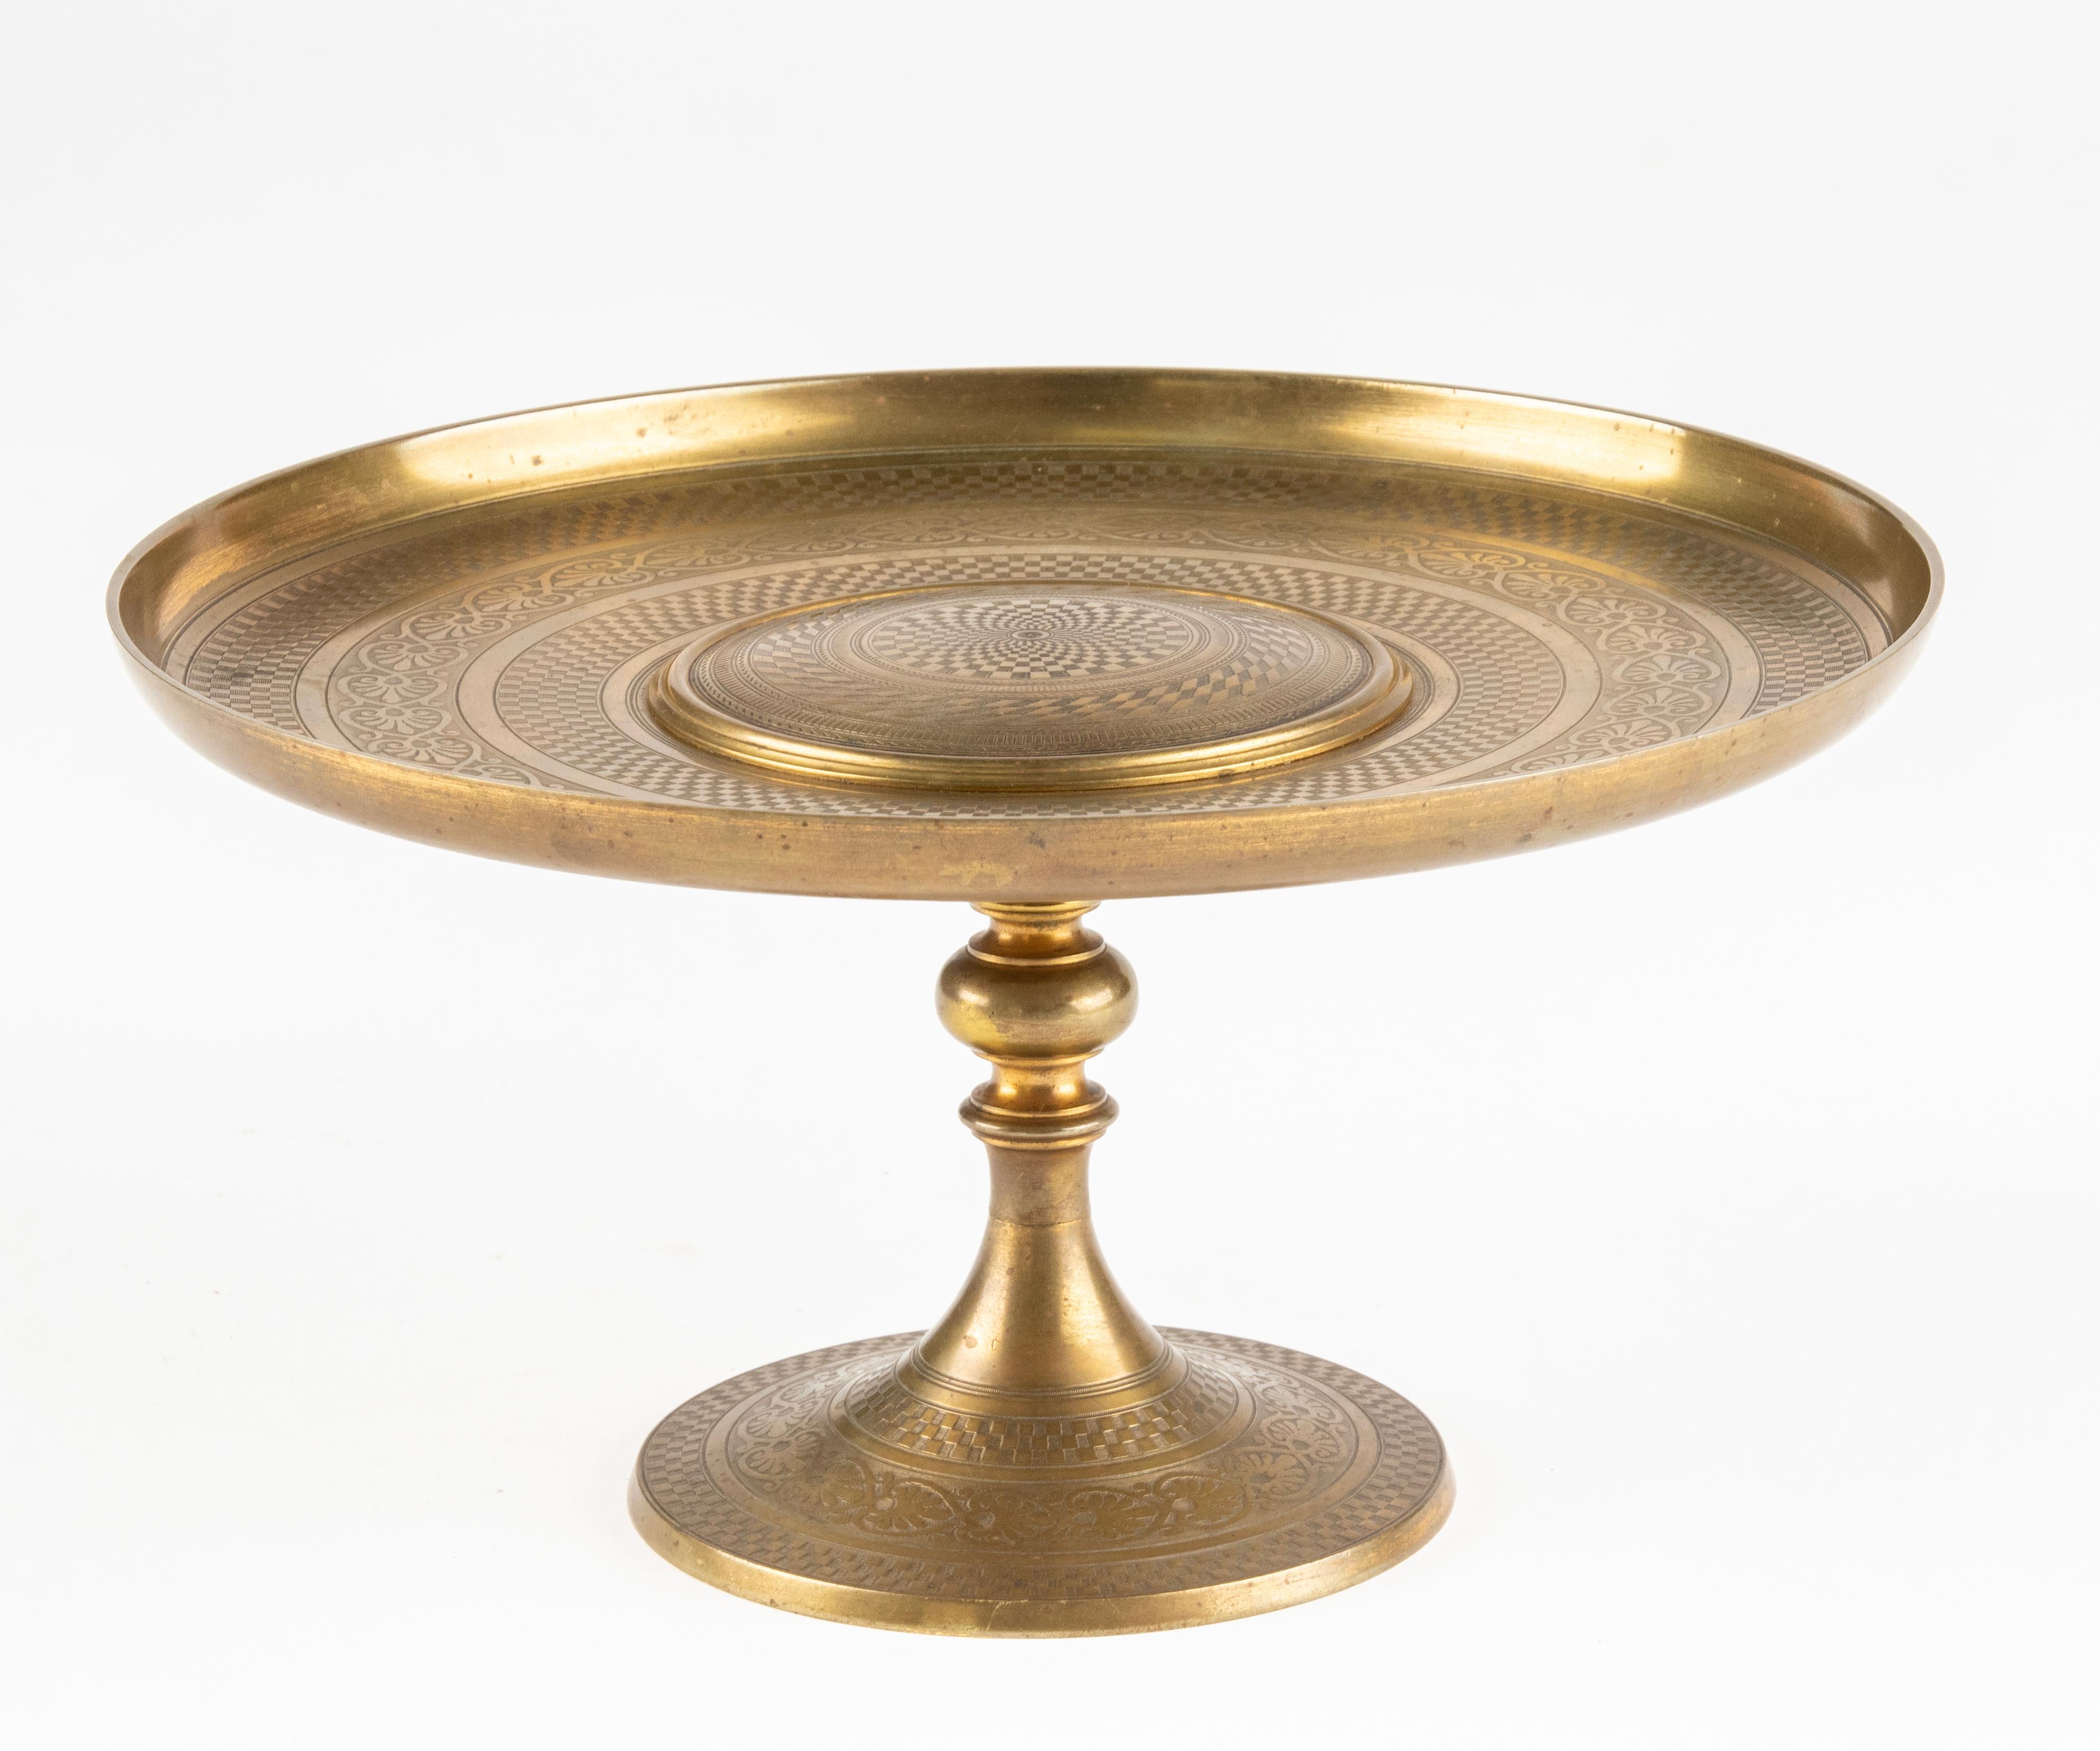 Élégant plat à tazza en bronze français Napoléon III, avec une fine gravure de formes géométriques. Belle patine ancienne.
Objet très décoratif. En bon état. 
 